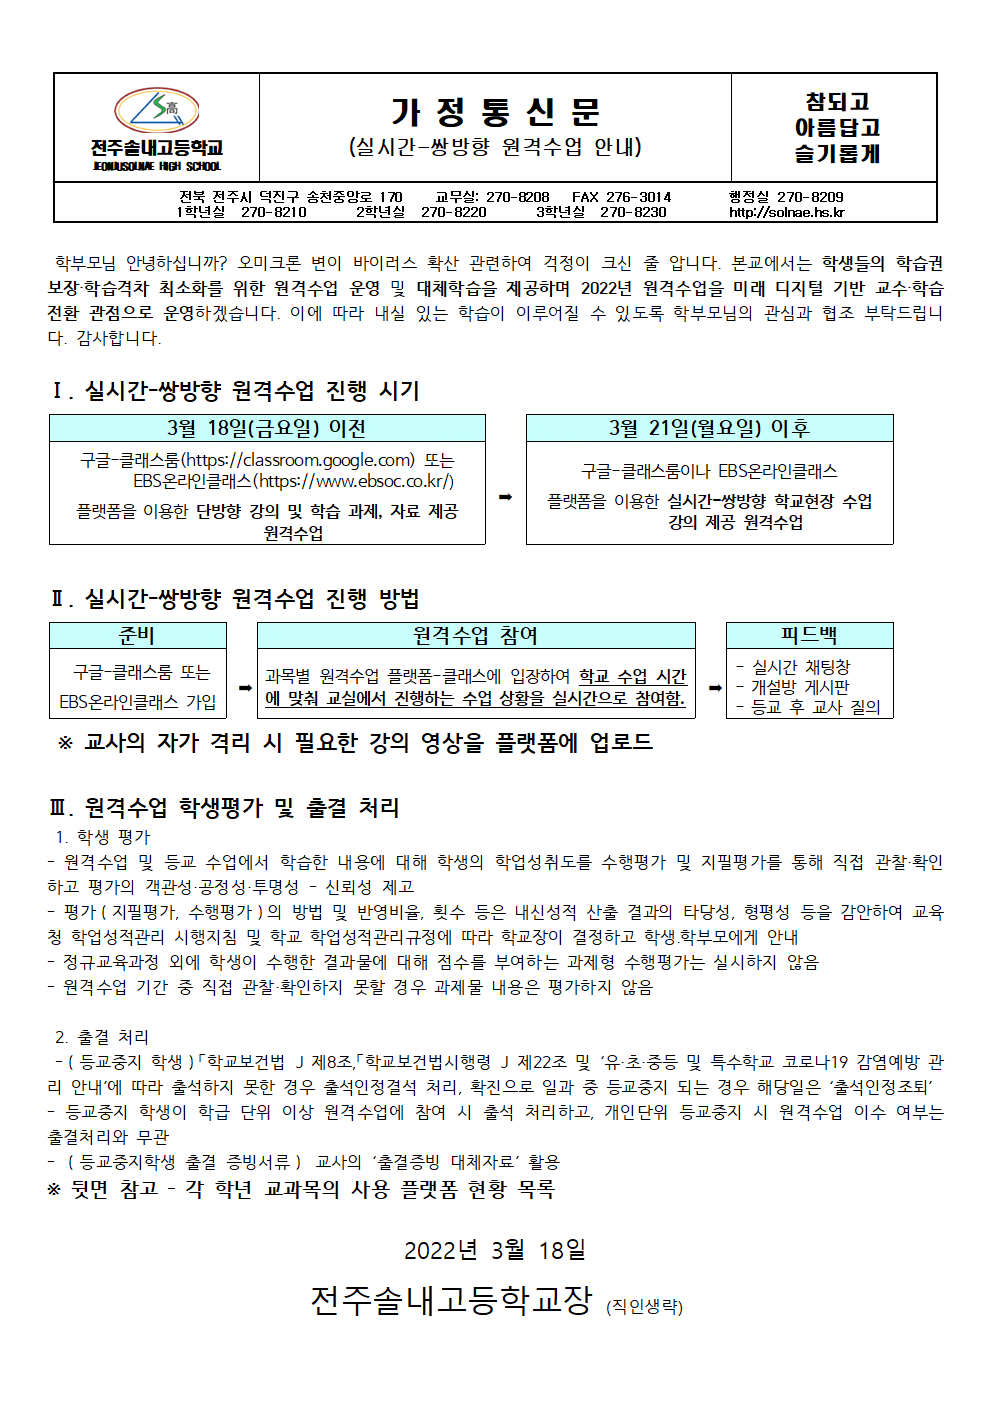 2022학년도 실시간-쌍방향 원격수업 운영 안내(가정통신문)001